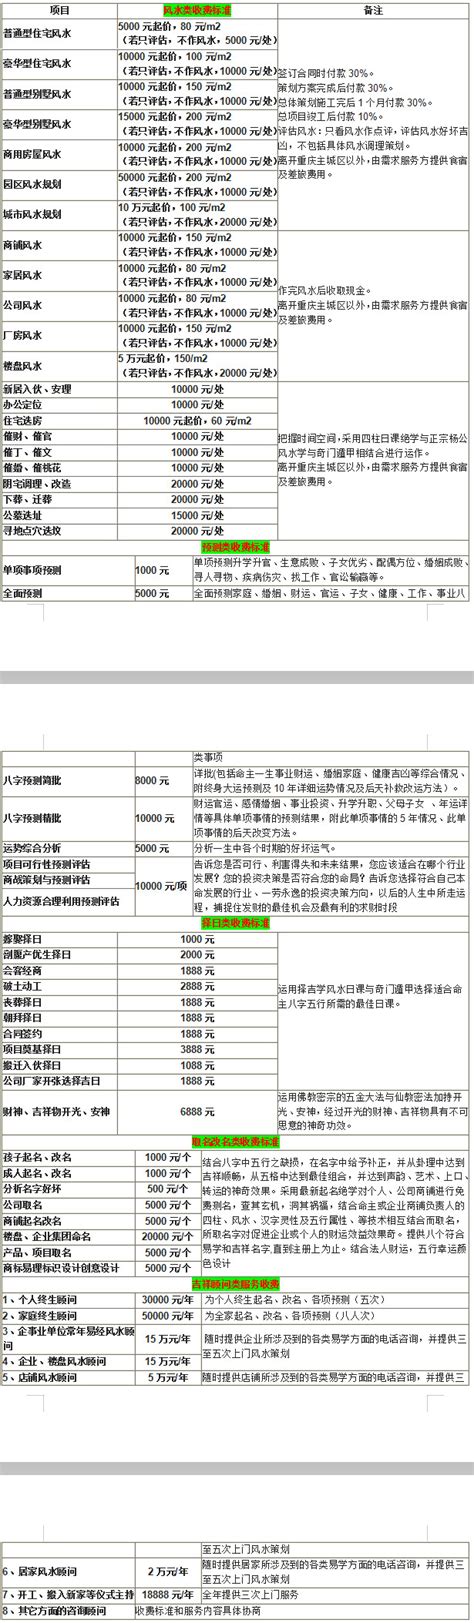 2021年第三季度贵州省城镇、农村居民累计人均可支配收入及人均消费支出统计_智研咨询